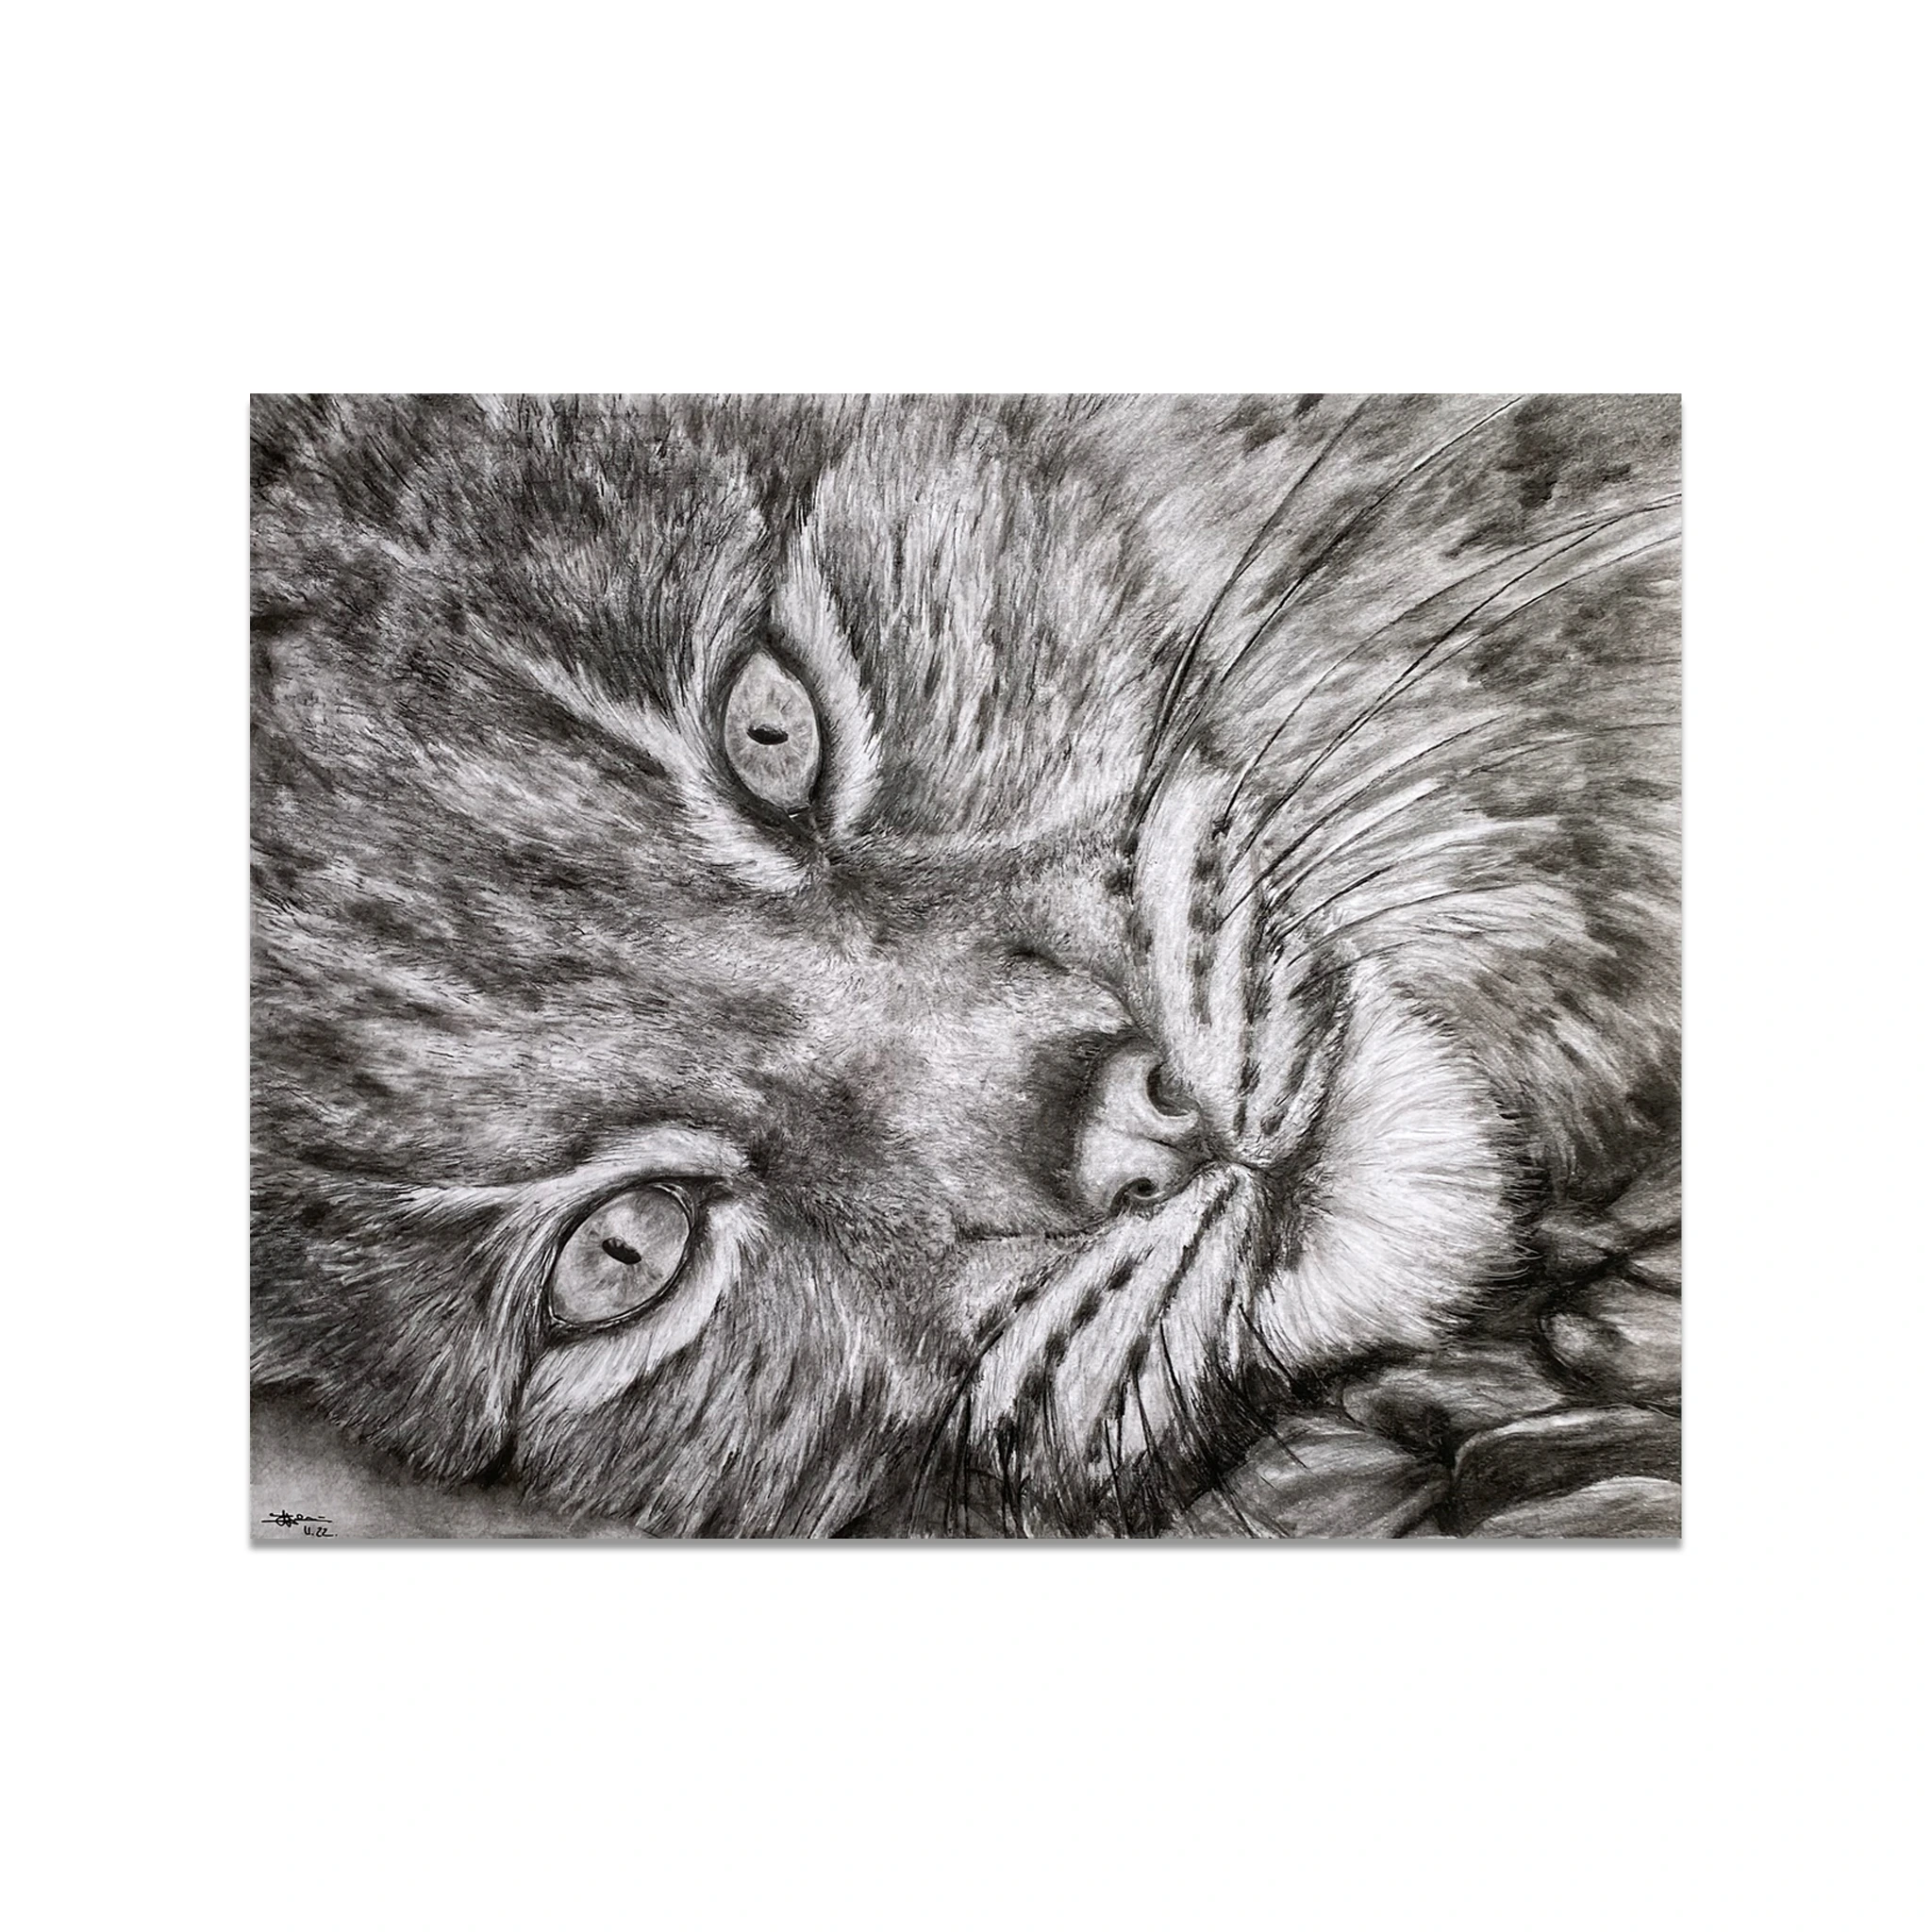 Dessin réaliste en noir et blanc d'un plan très rapproché d'un lynx couché sur des cailloux. Les yeux du félin sont ouverts et fixent le spectateur de l'oeuvre.